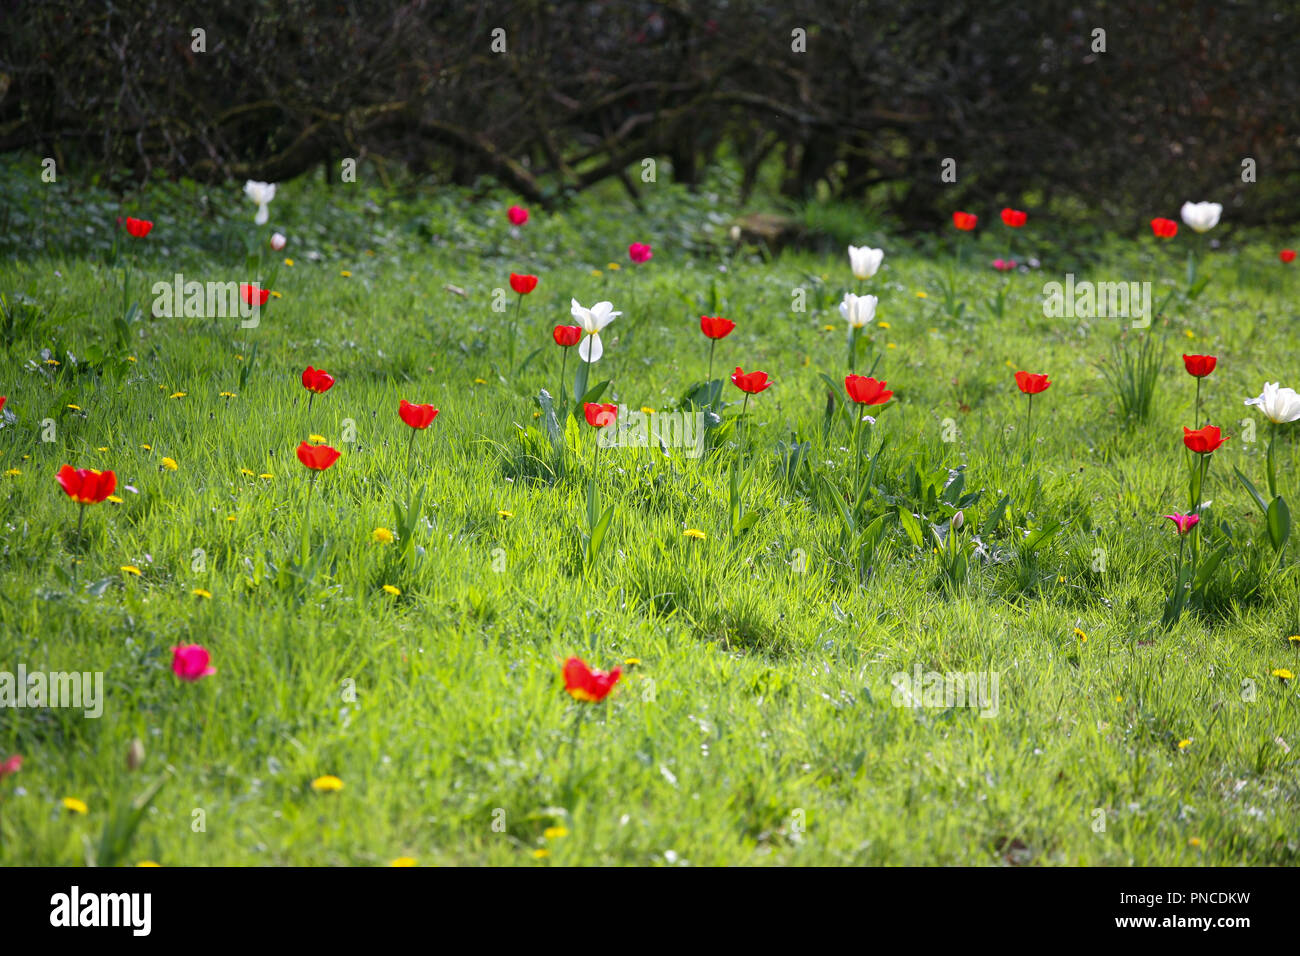 Vivaci tulipani rossi (Tulipa spp.) in un prato erboso, tempo di primavera Foto Stock